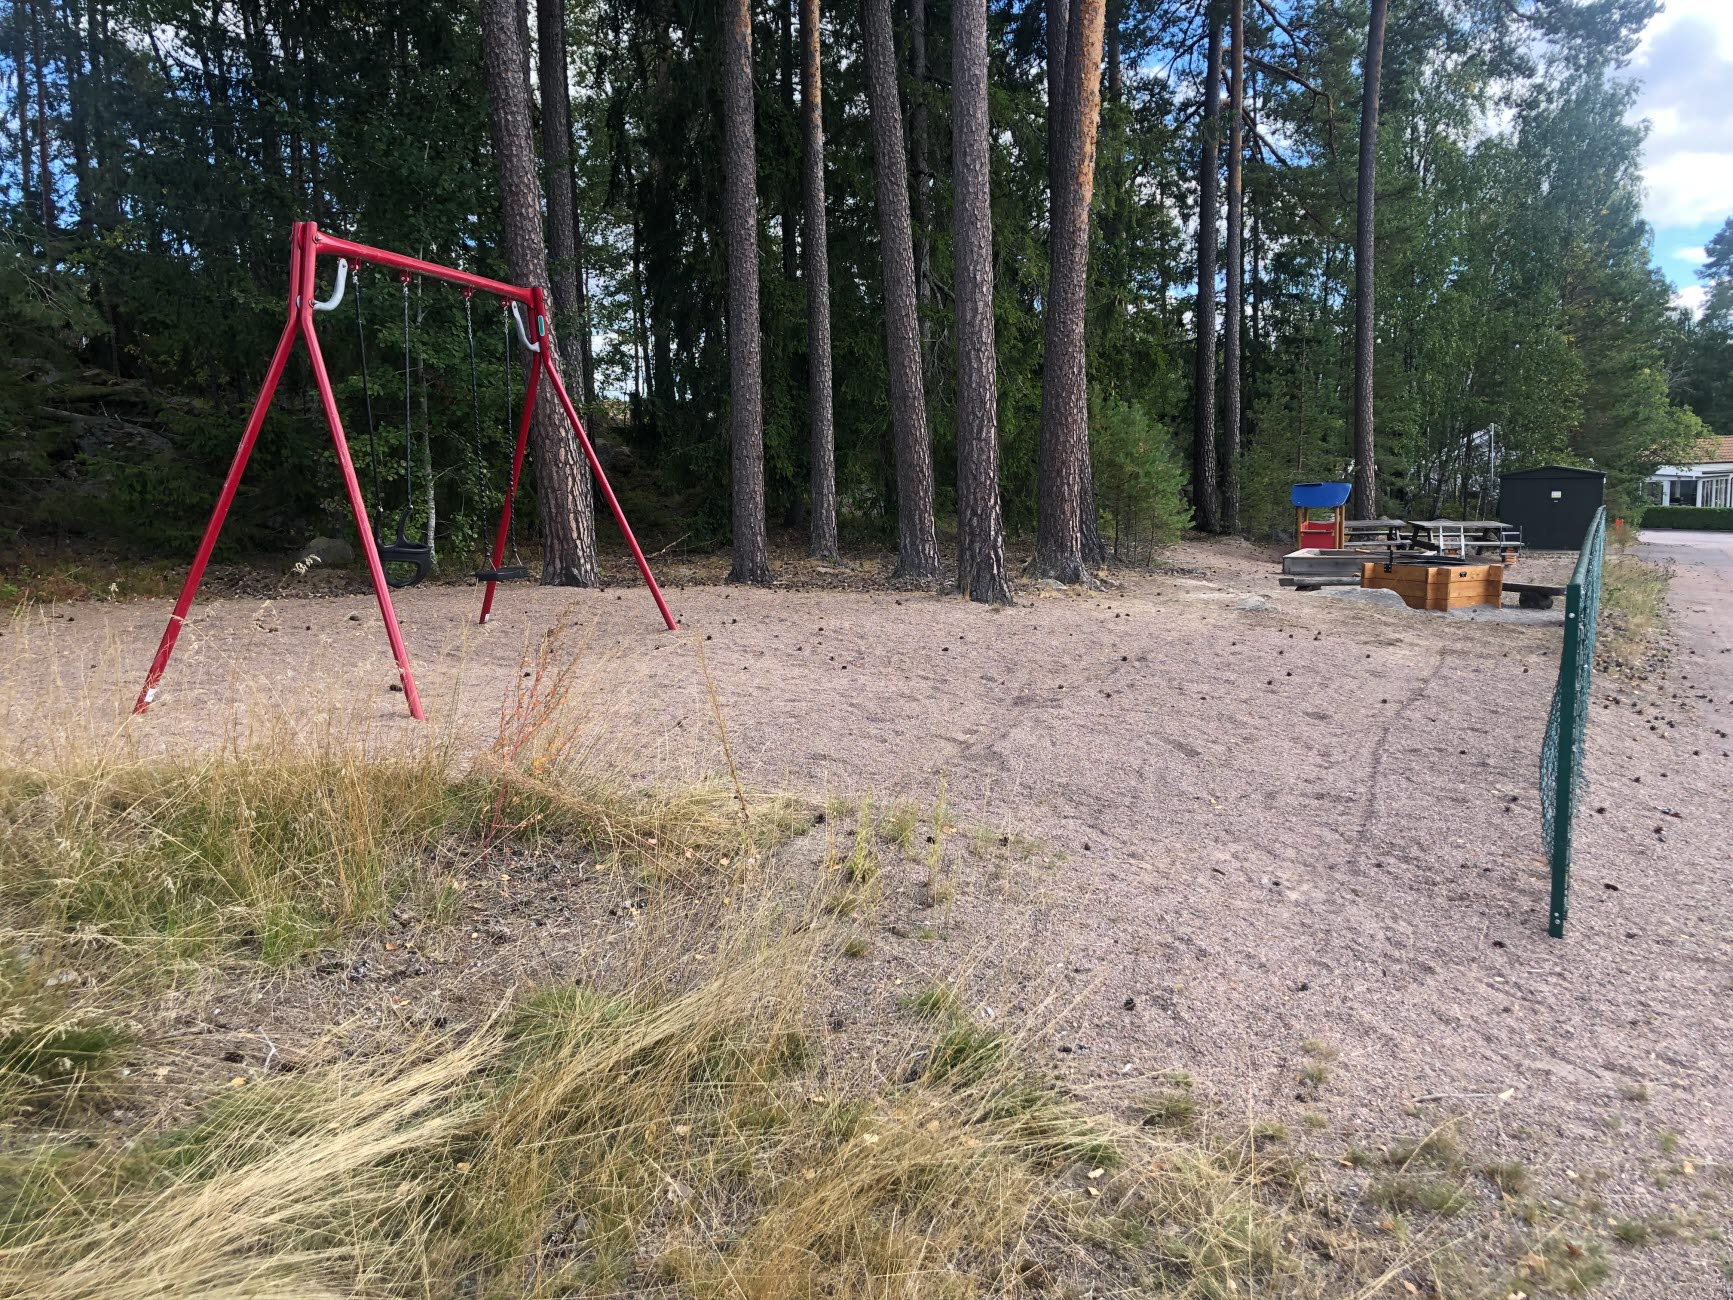 I Hagbråtens lekplats finns det en lekstuga, sandlåda, gungor, fjäderdjur och en grillplats.